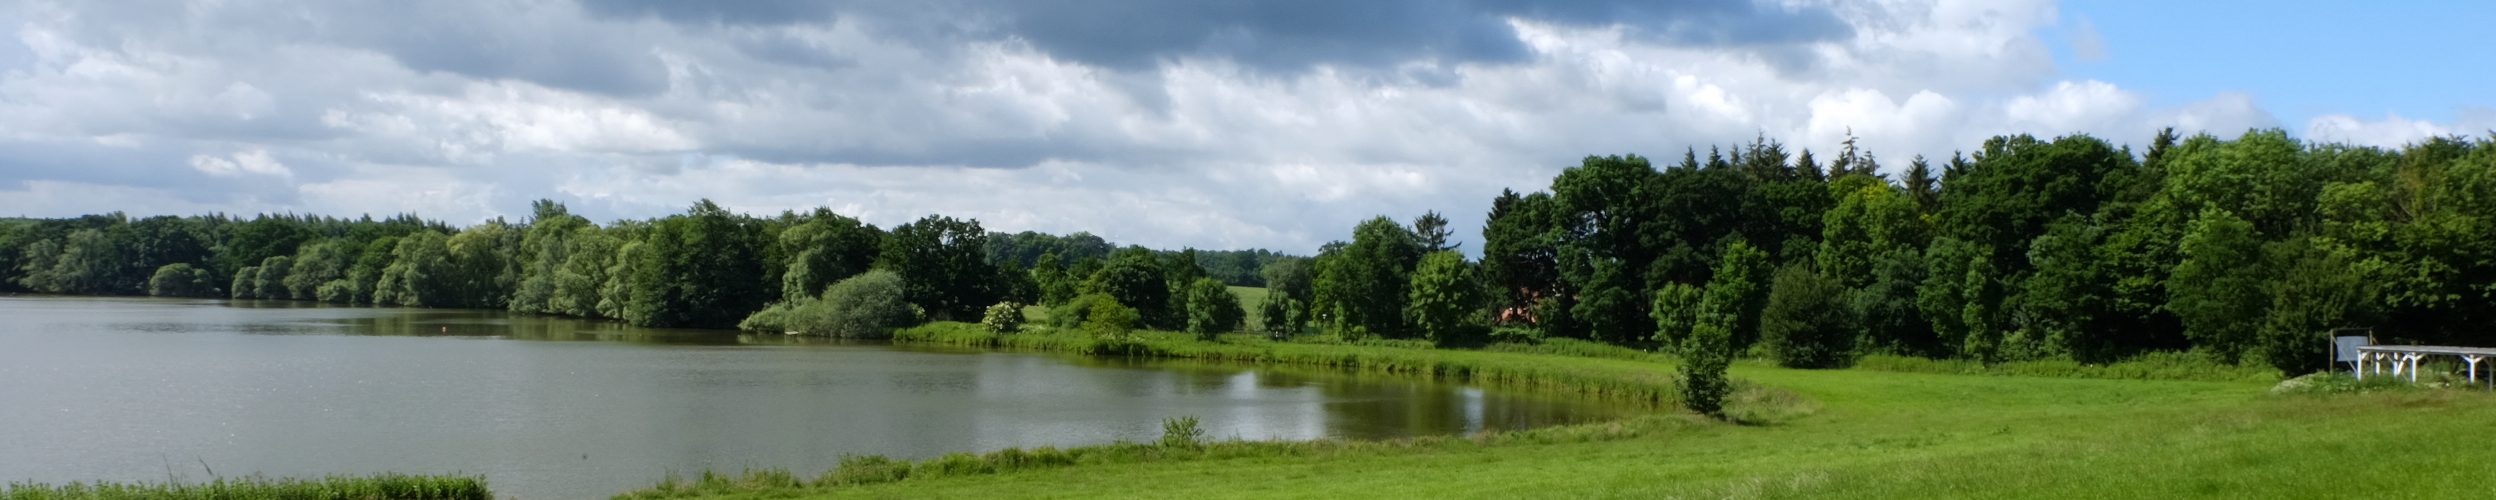 Flörkendorfer Teich – Seen in Schleswig-Holstein | © weites.land